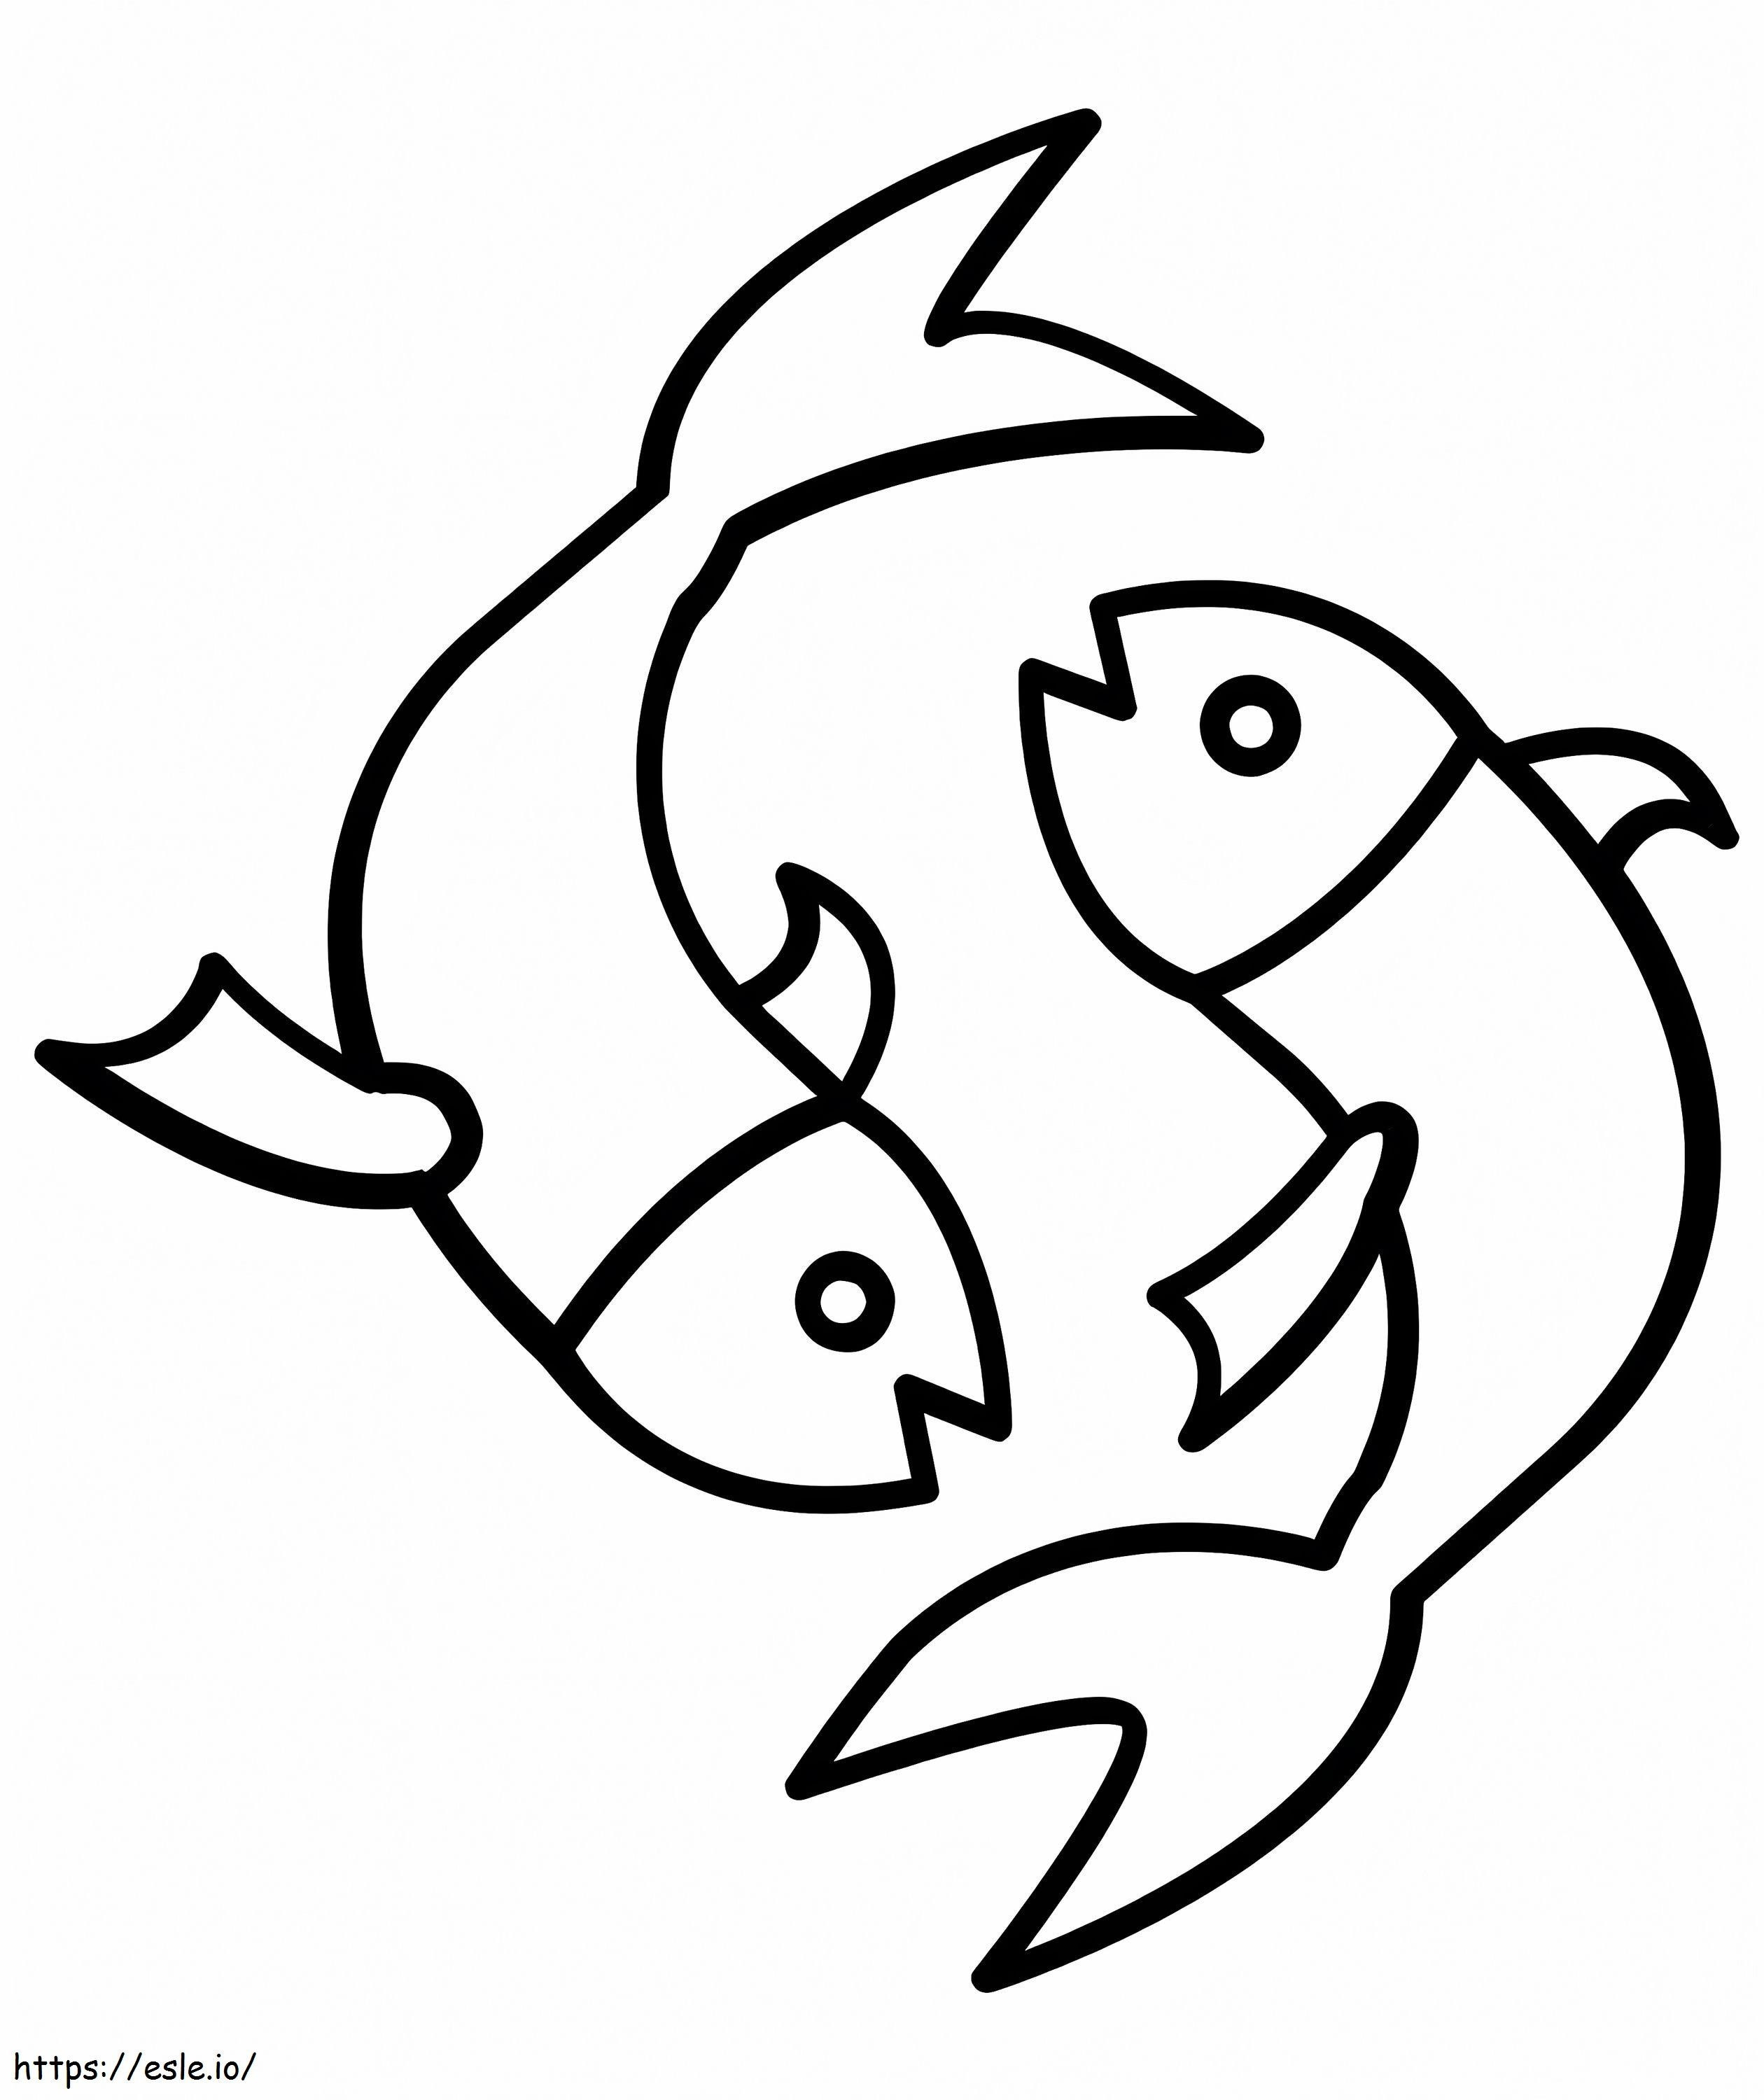 Einfaches Fische-Symbol ausmalbilder